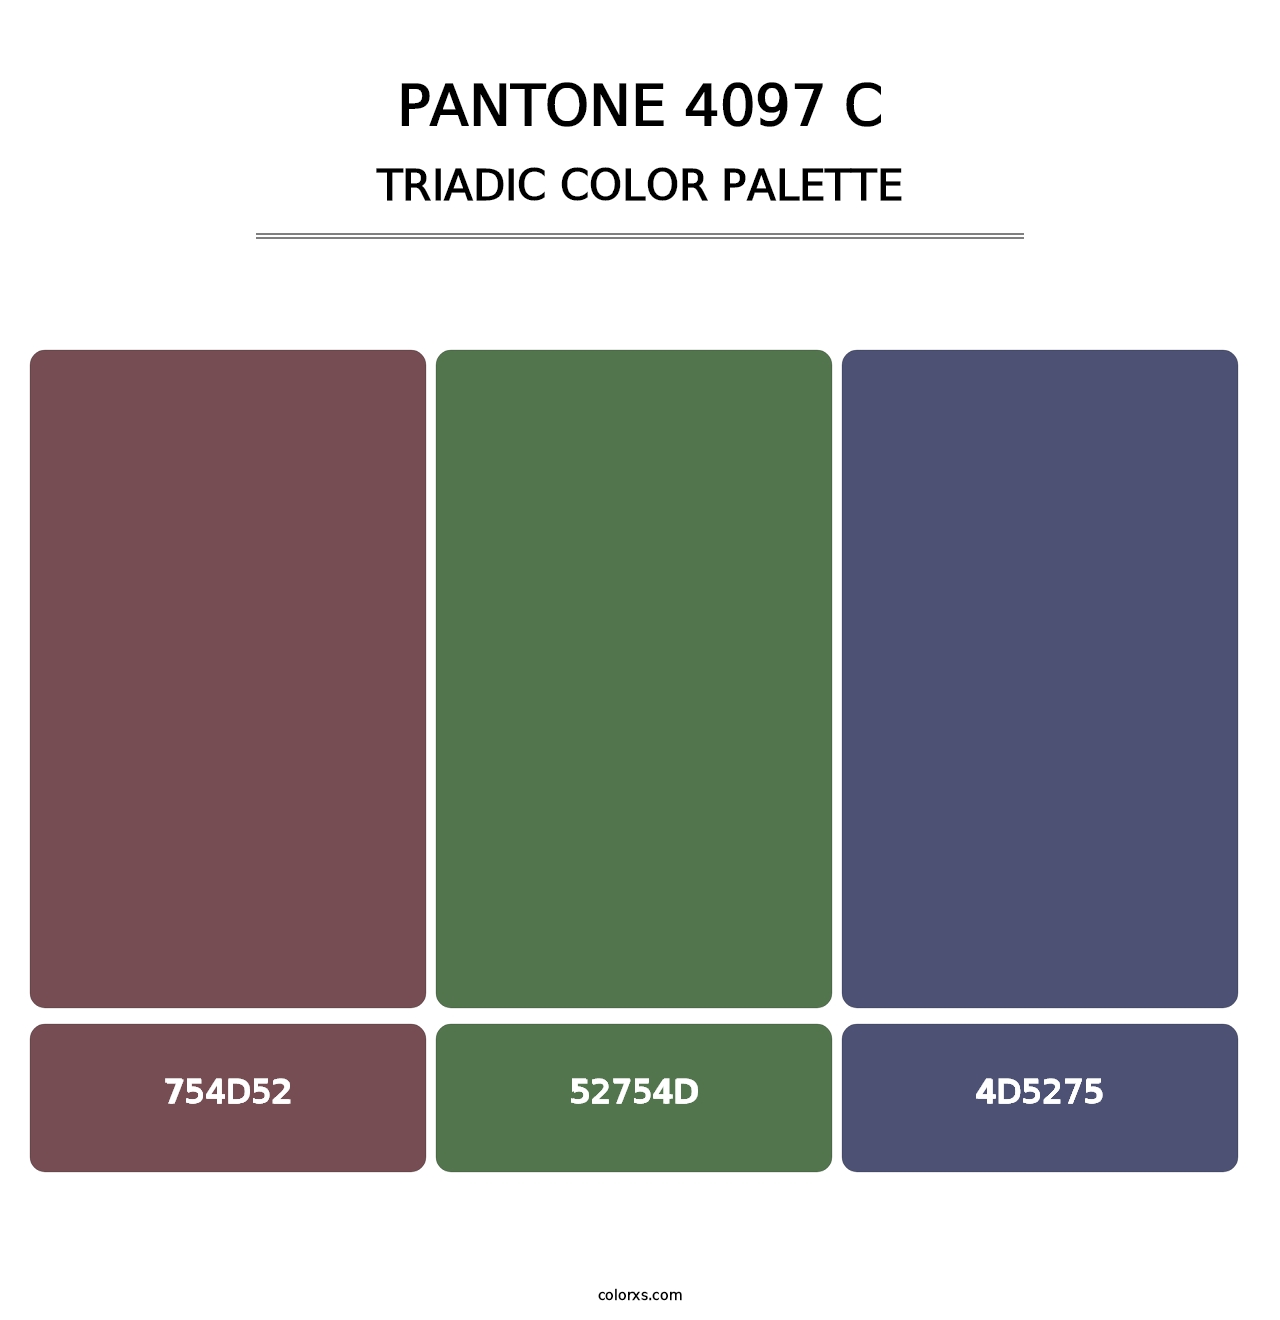 PANTONE 4097 C - Triadic Color Palette